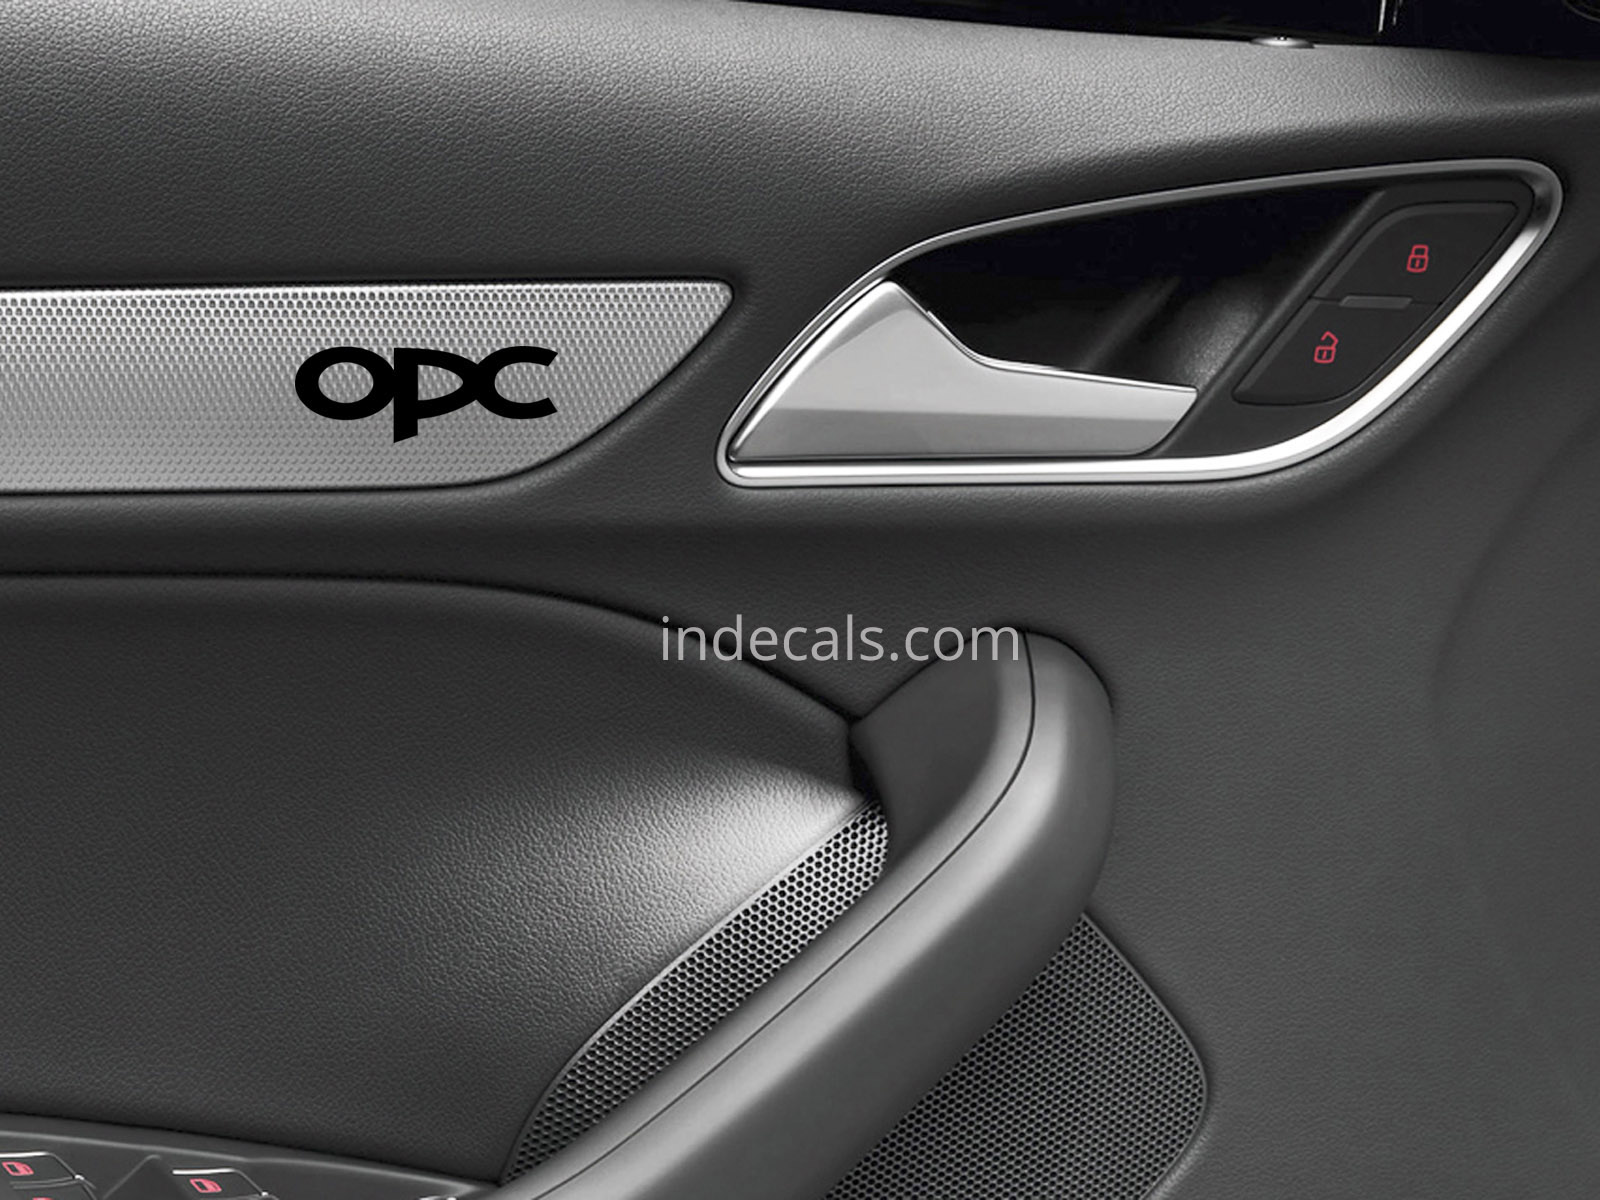 6 x Opel OPC Stickers for Door Trim - Black